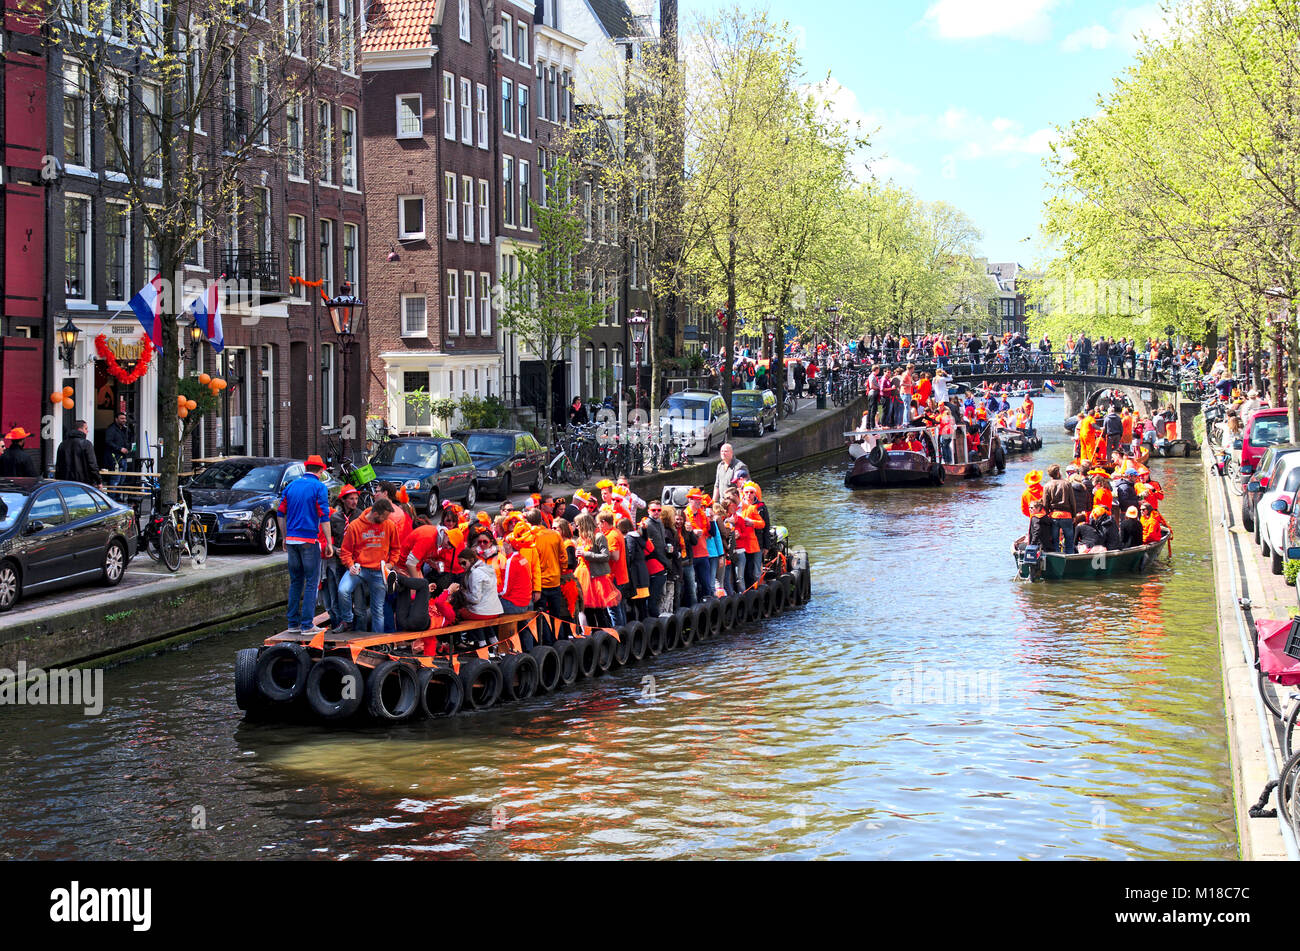 Eine Szene auf einem Kanal in Amsterdam auf des Königs Tag. Mehrere Boote im Kanal alle voller feiern Menschen tragen orange Farbe der Kleidung. Stockfoto